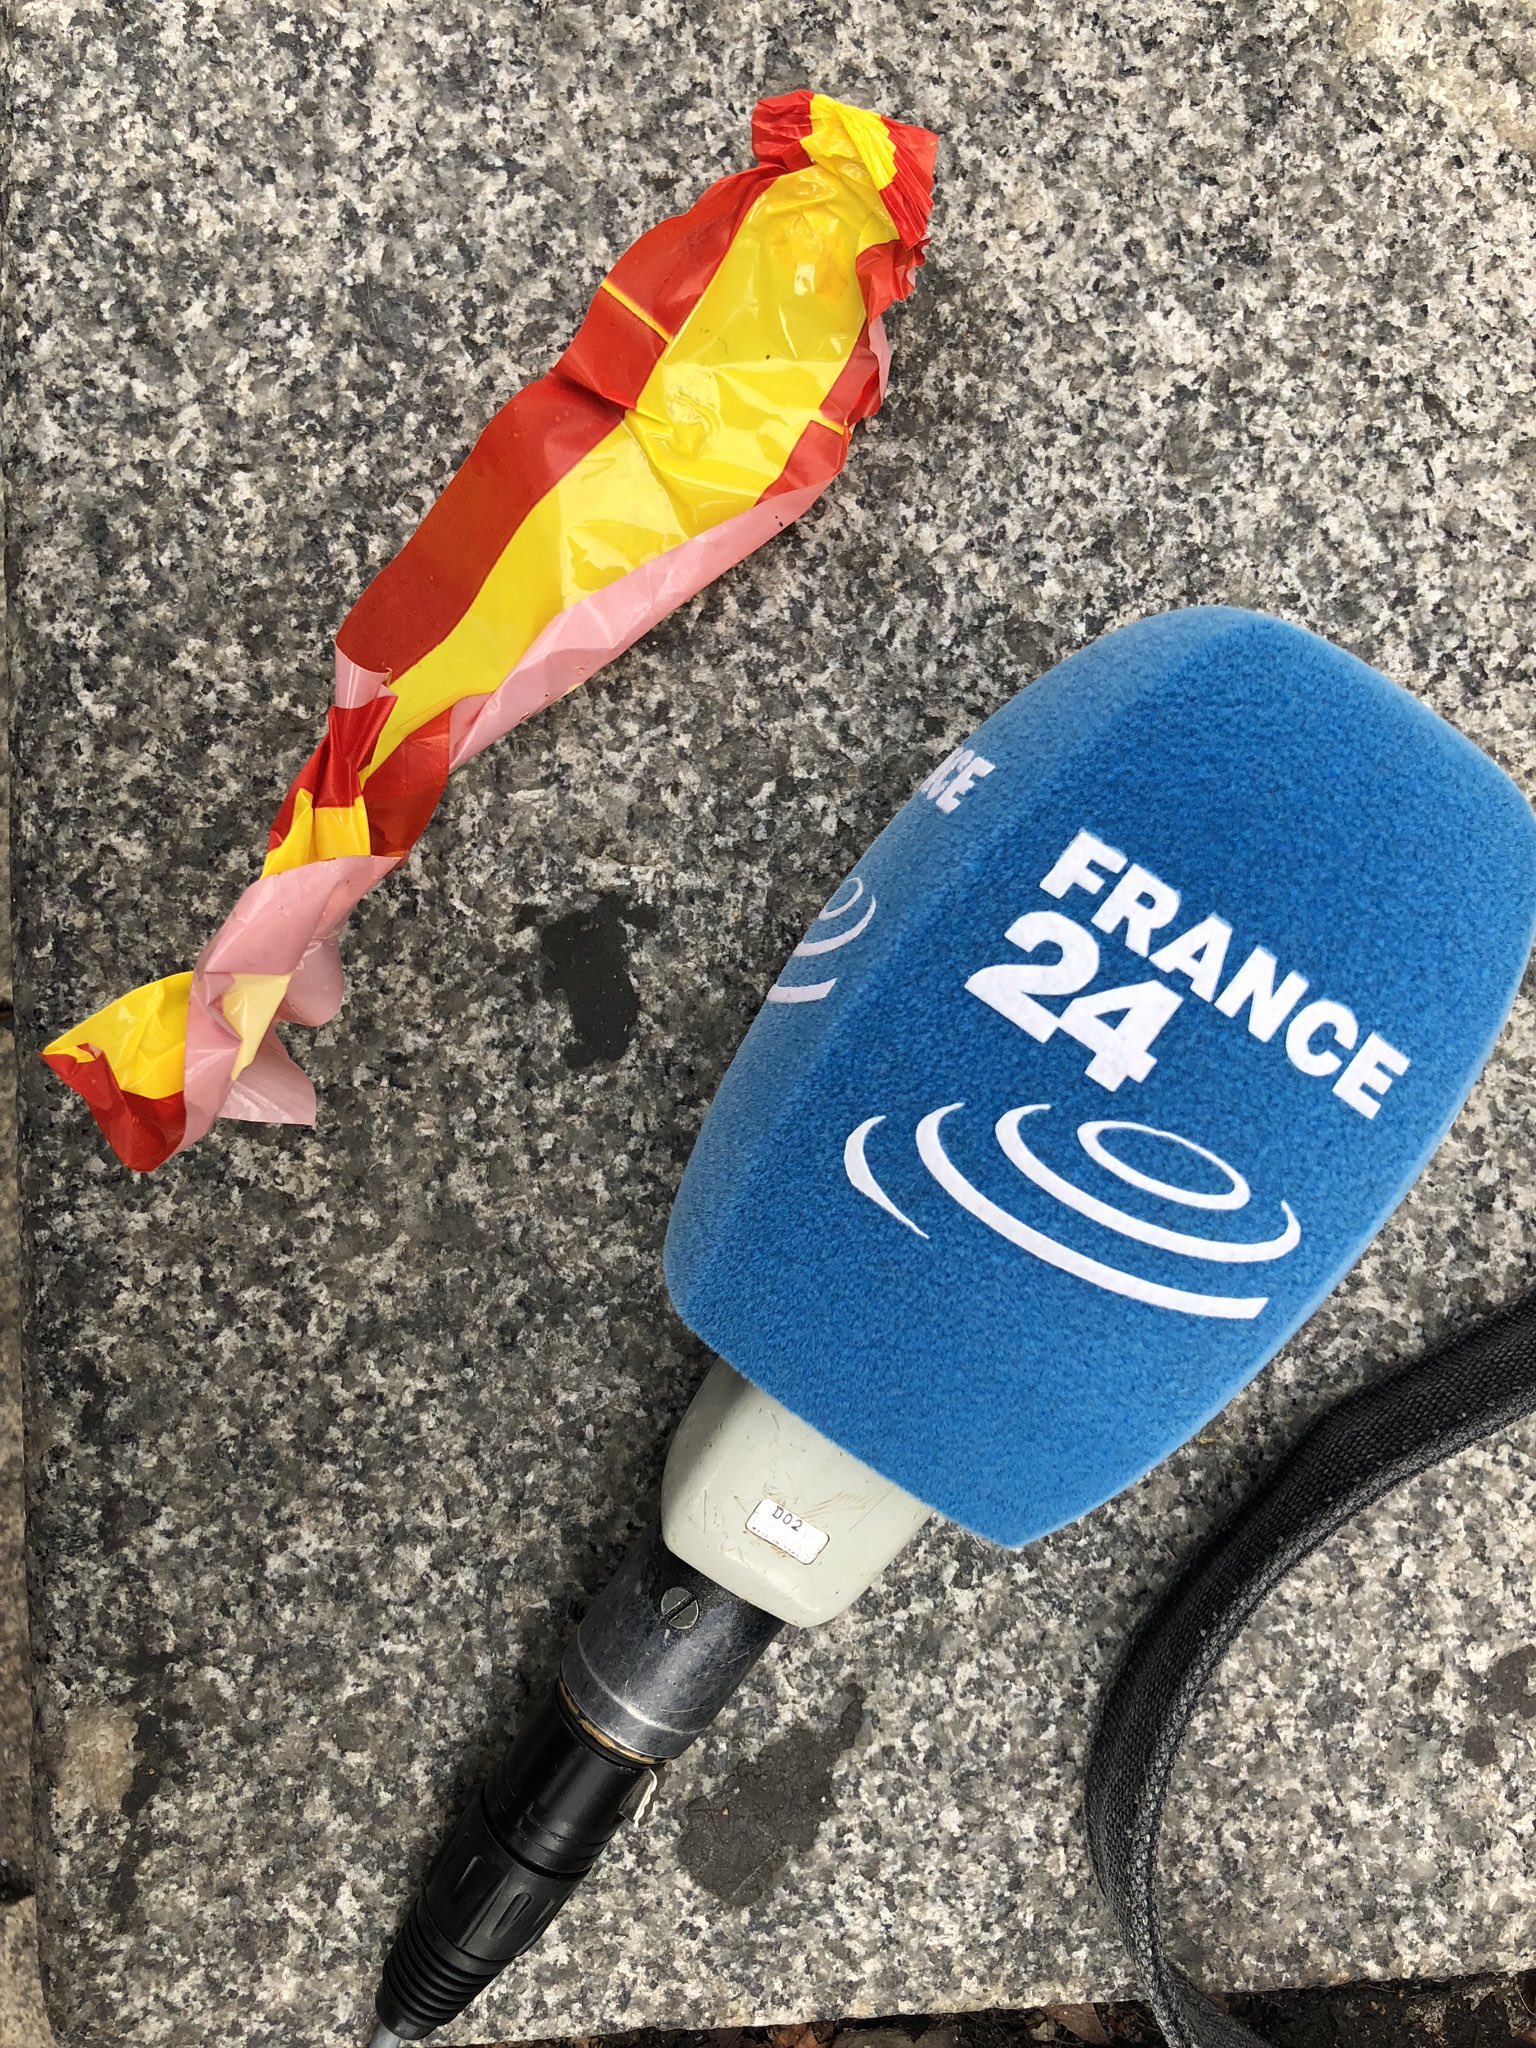 Una periodista francesa, assetjada per espanyolistes